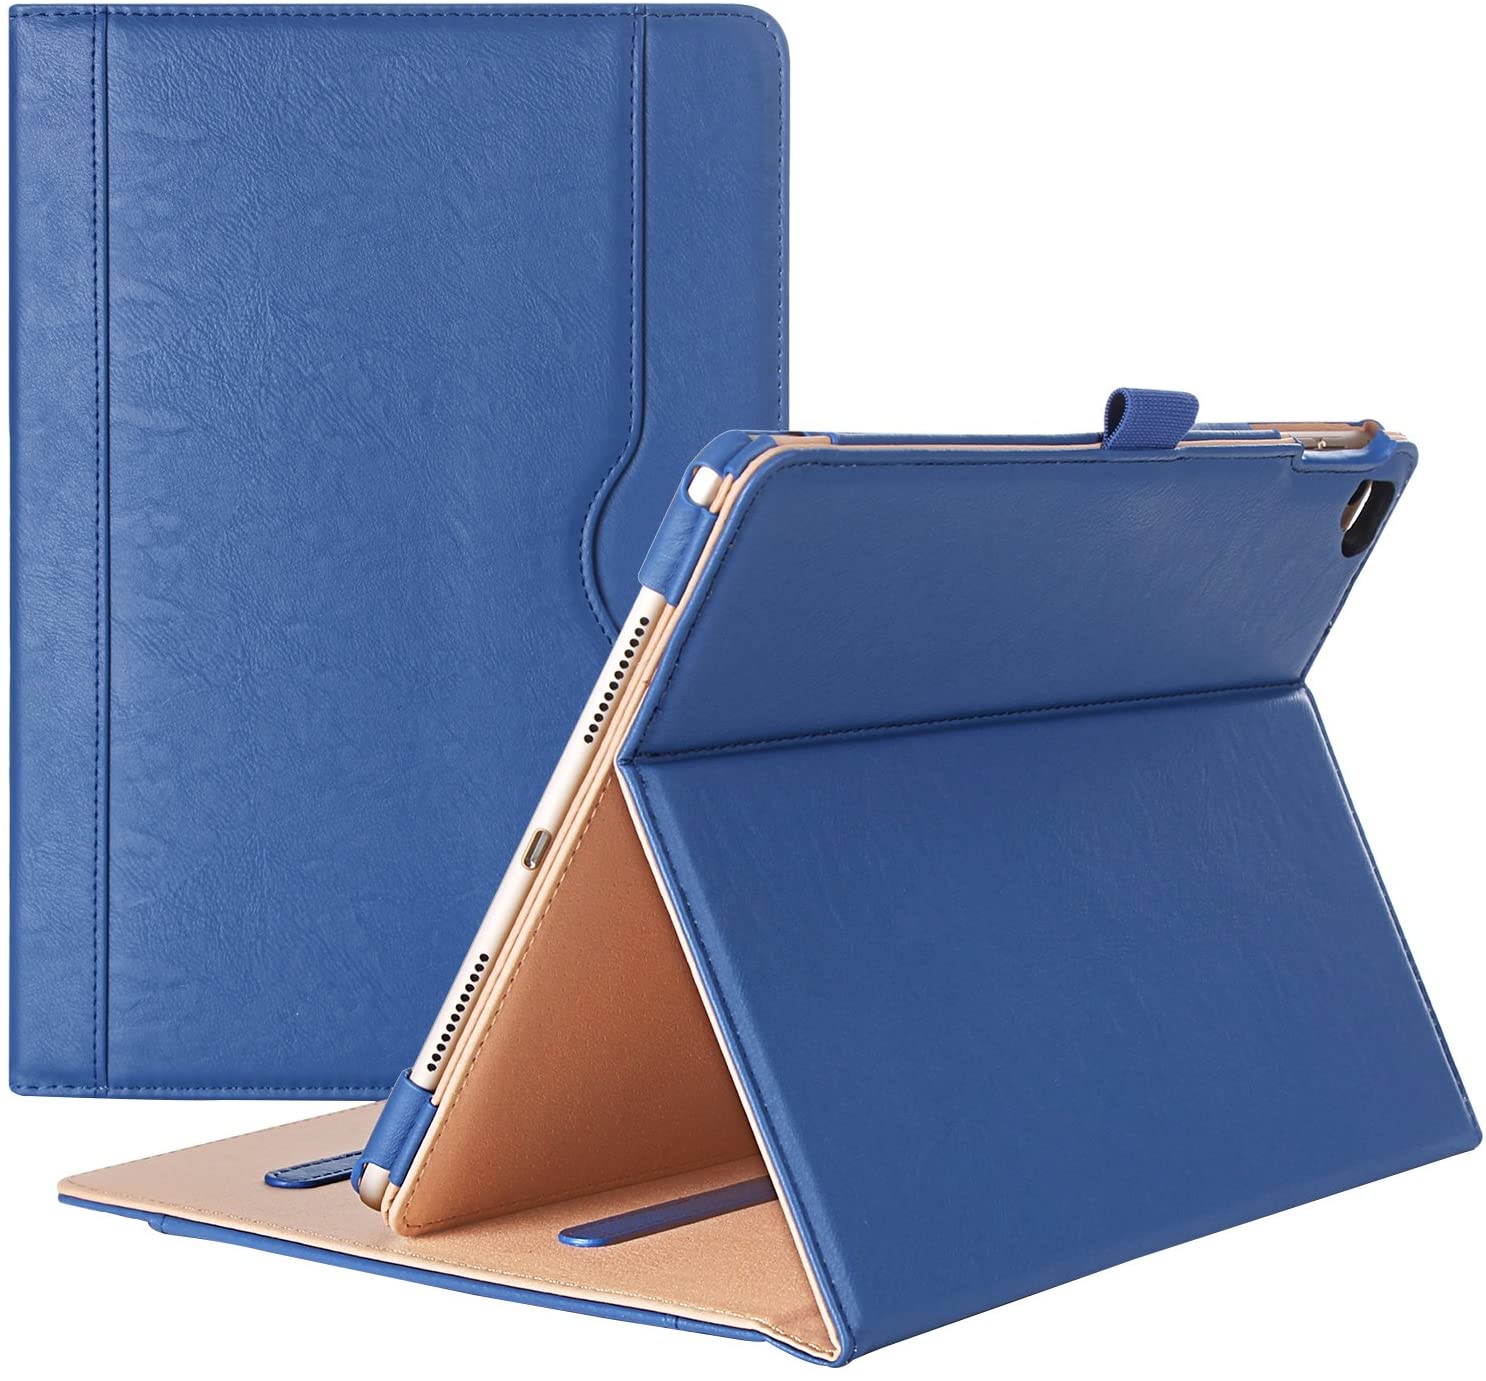 iPad Pro 9.7 2016 Leather Folio Case | ProCase navy